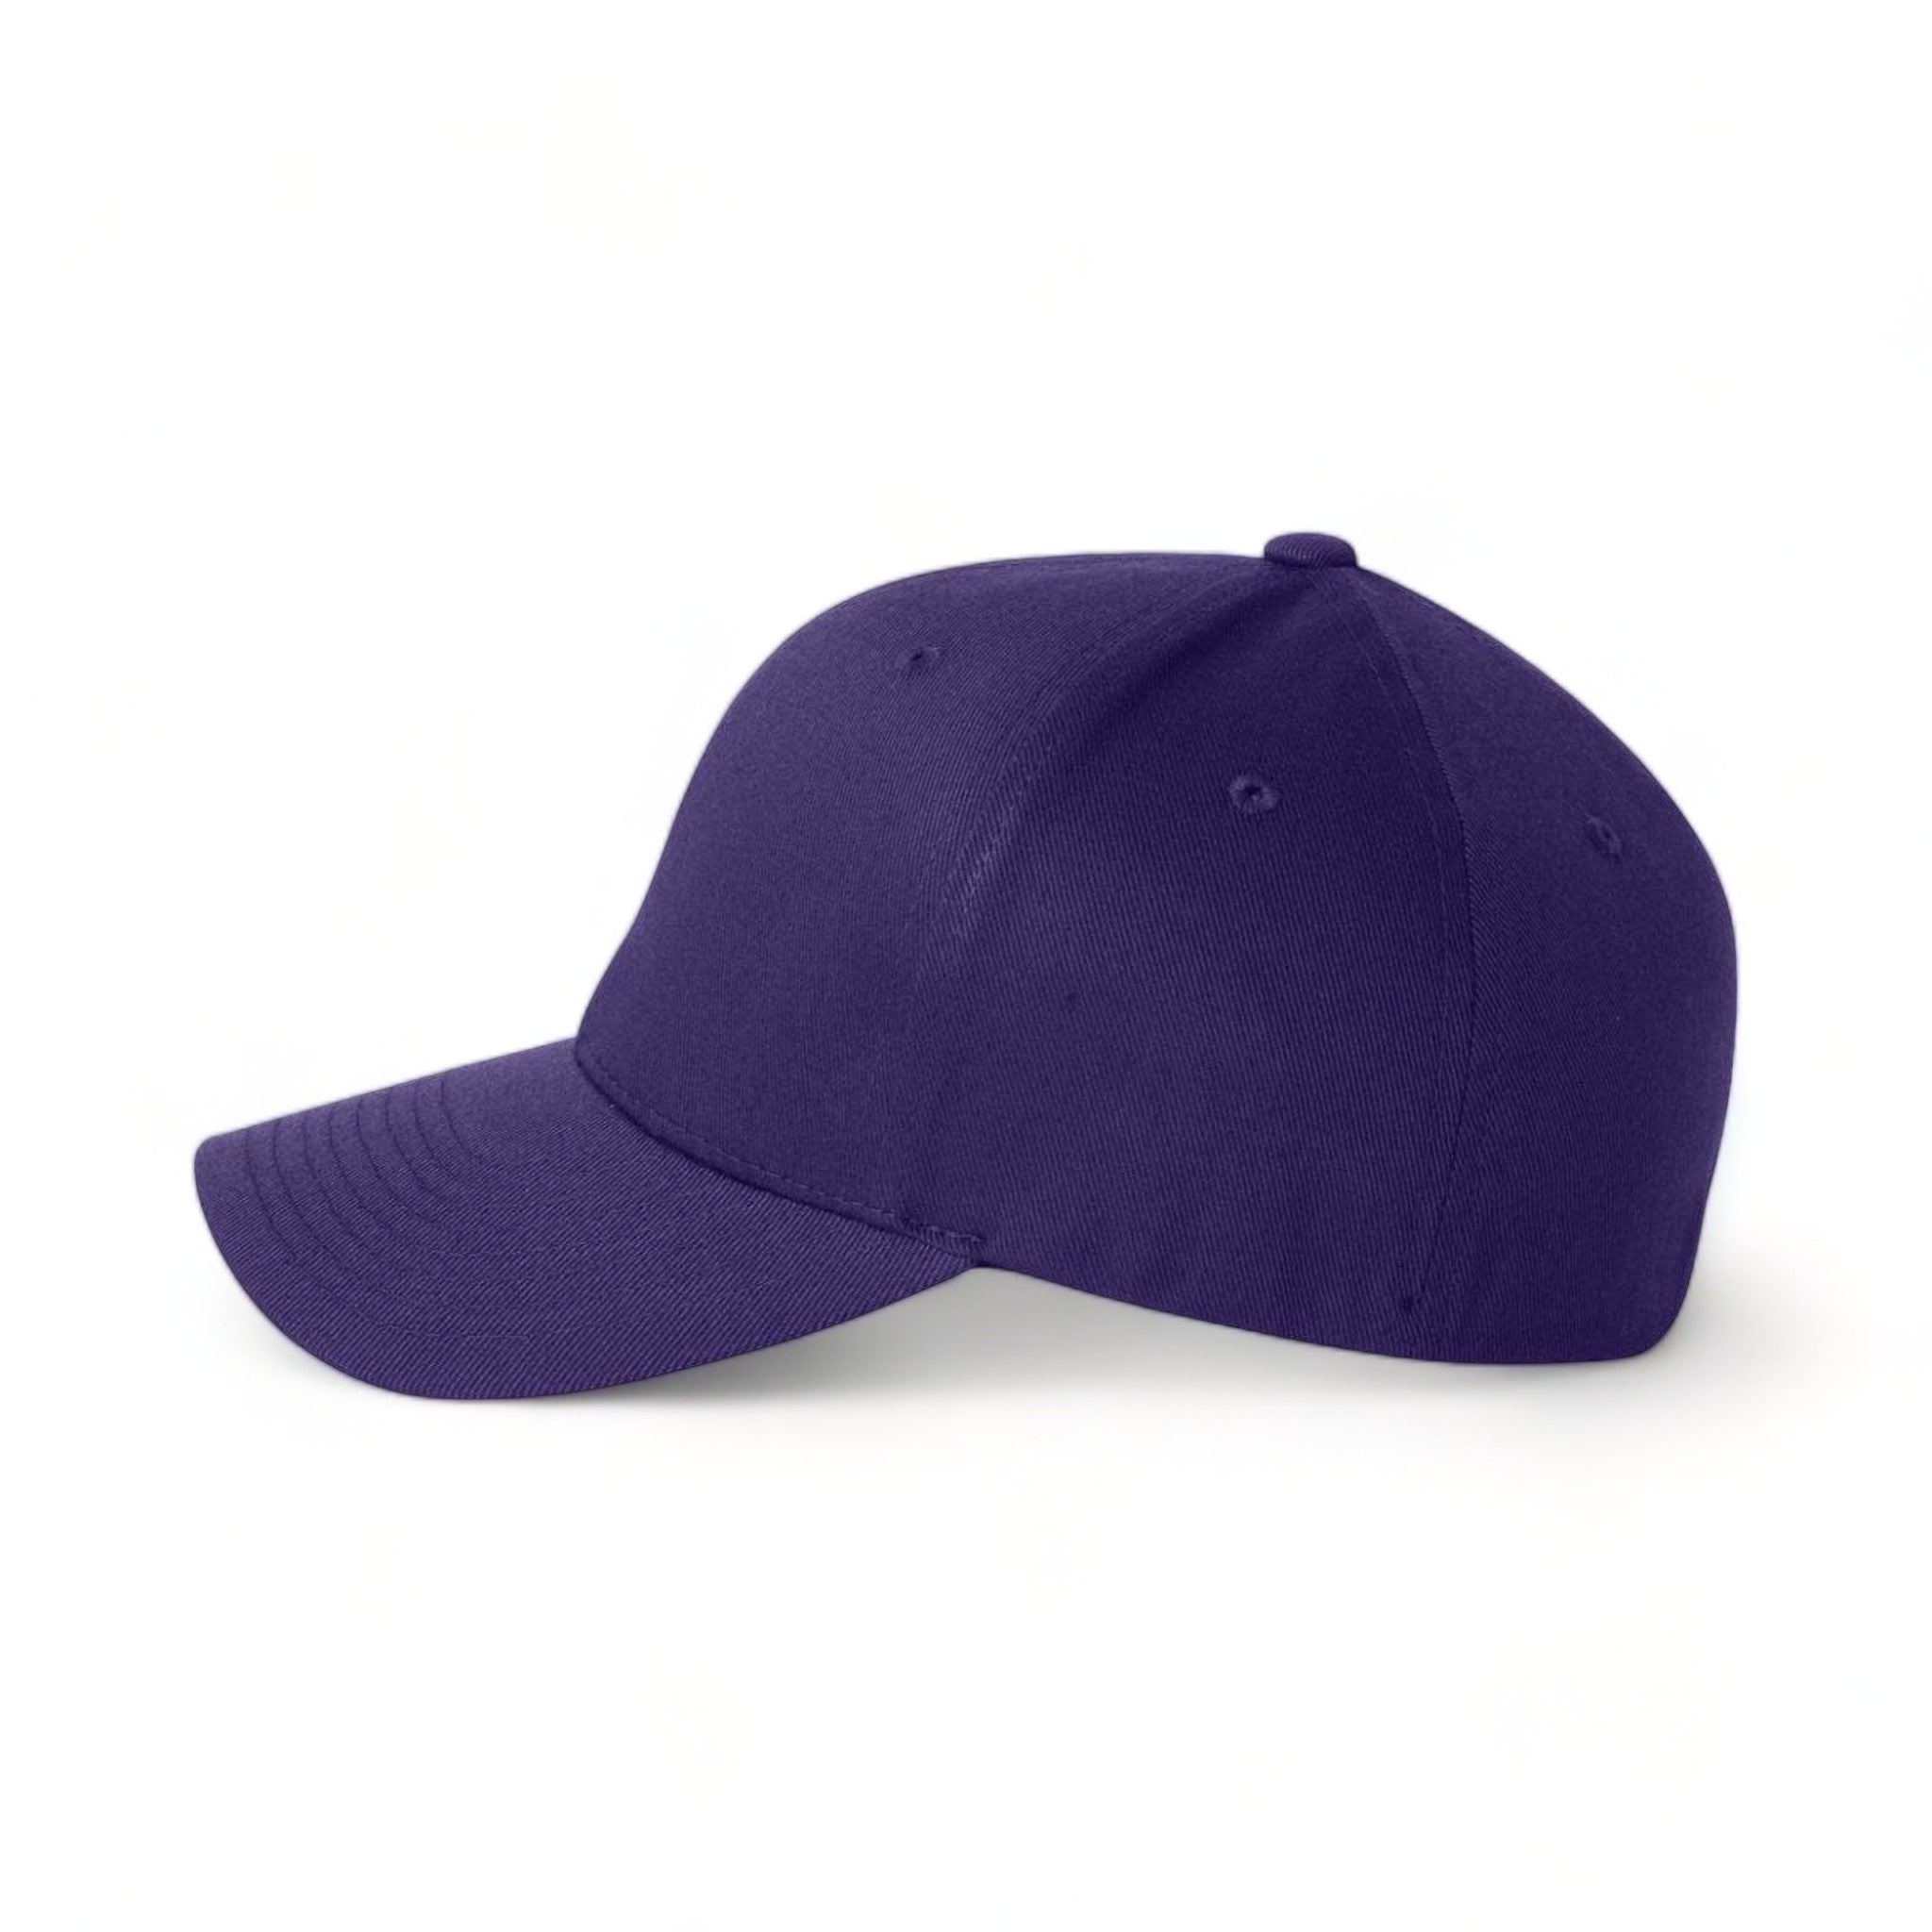 Side view of Flexfit 6277 custom hat in purple